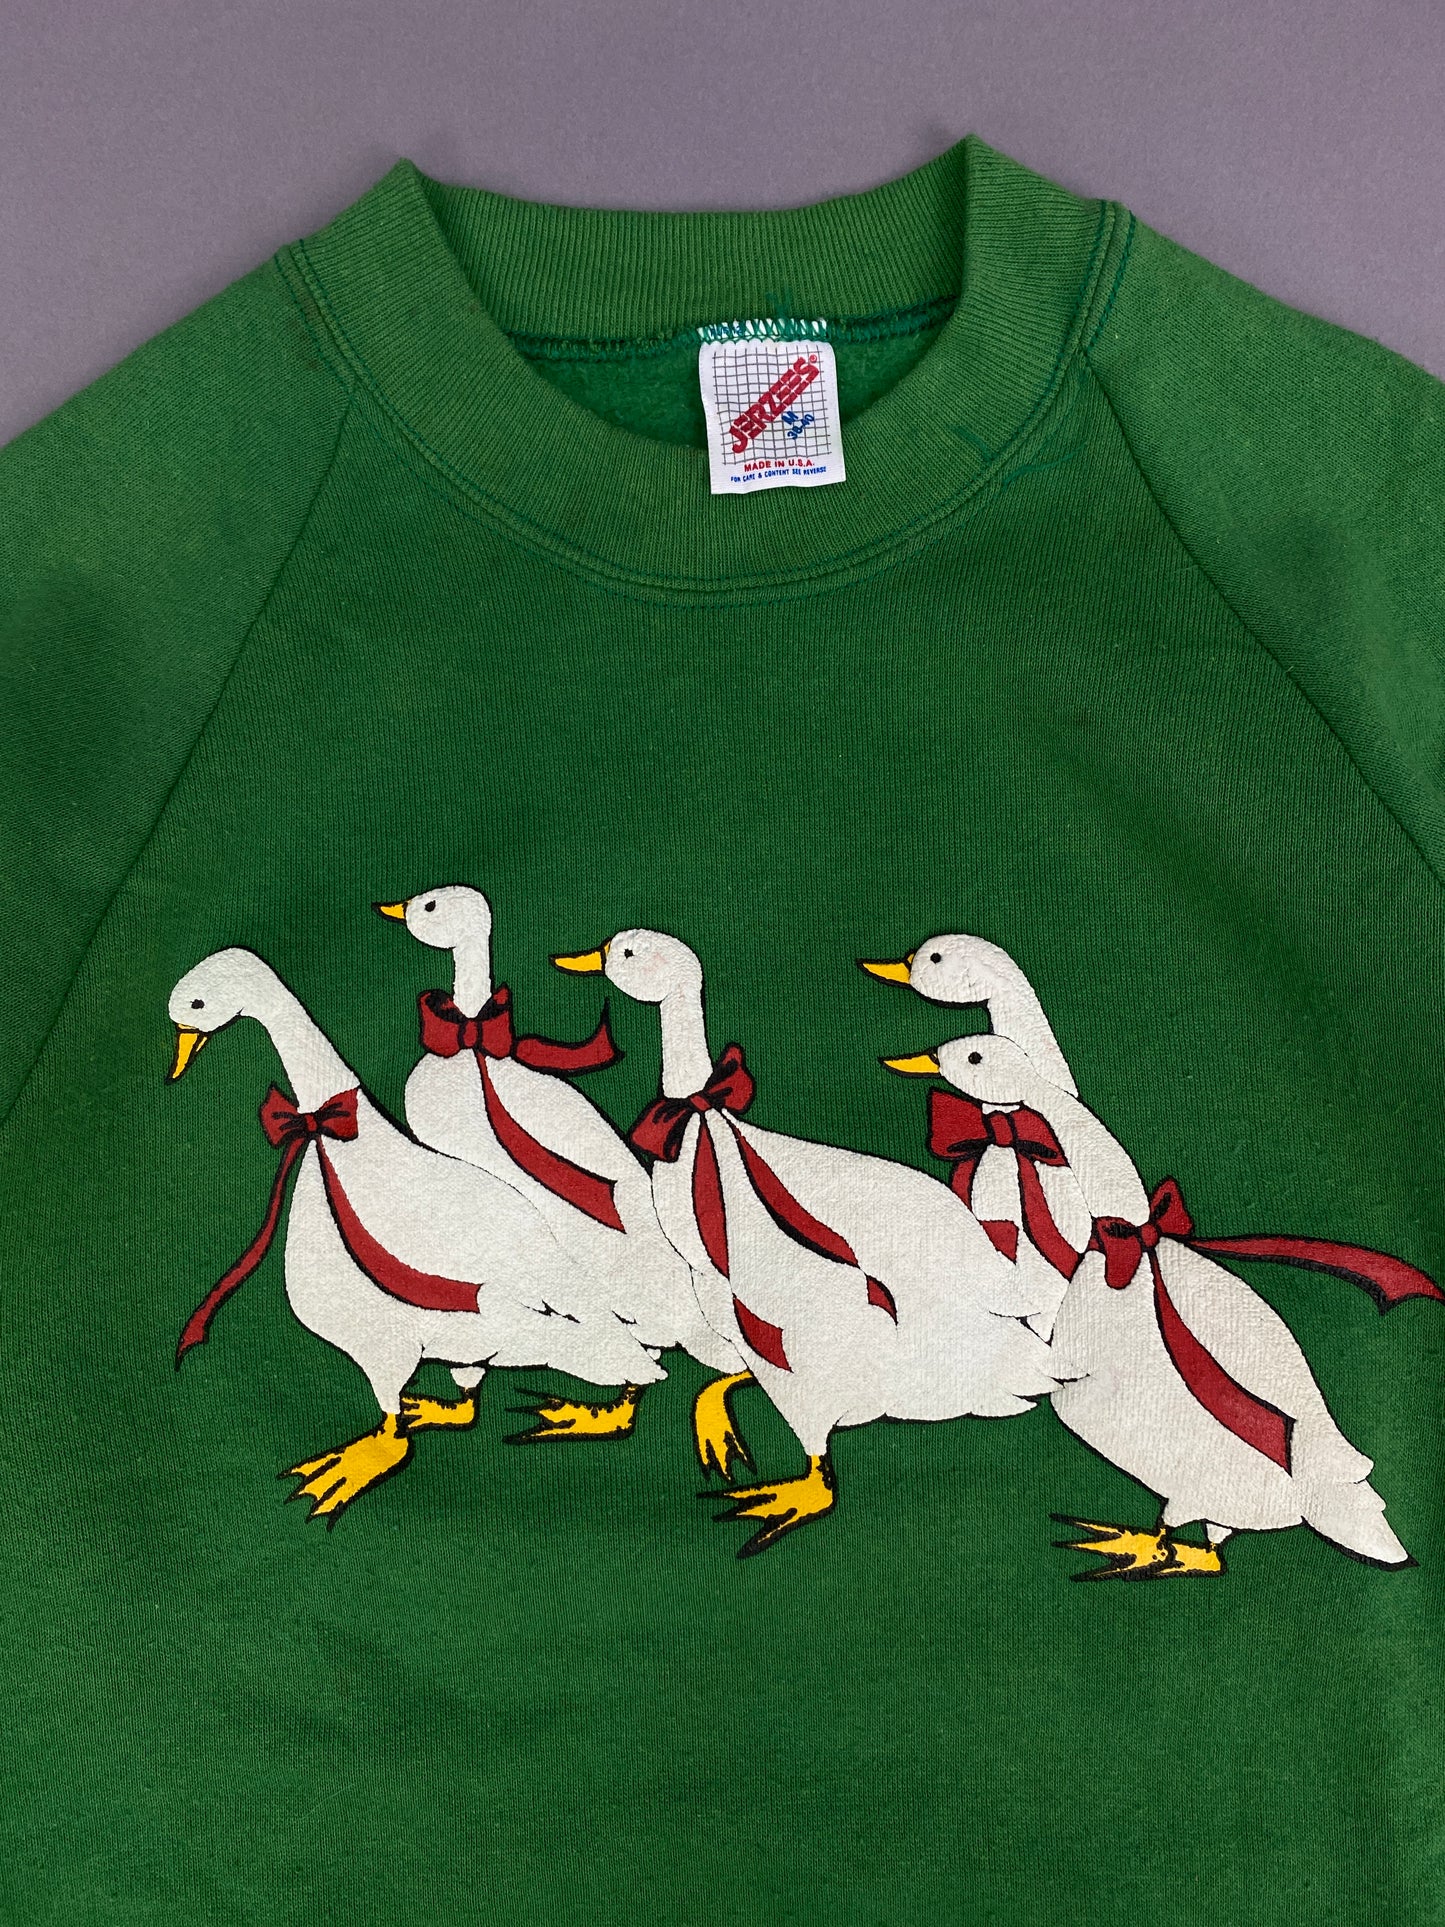 Vintage Ducks Sweatshirt